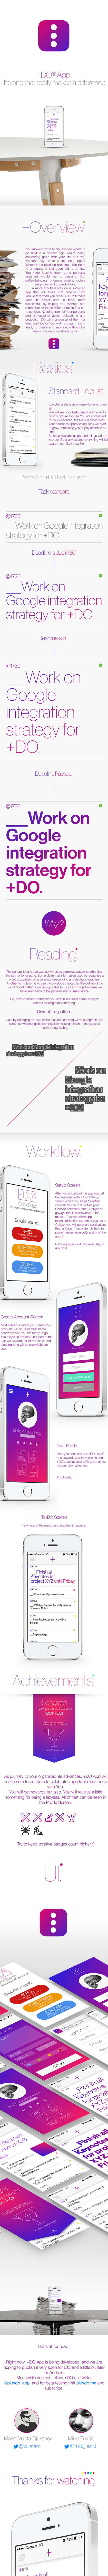 +DO® App 2014 (Redesign)